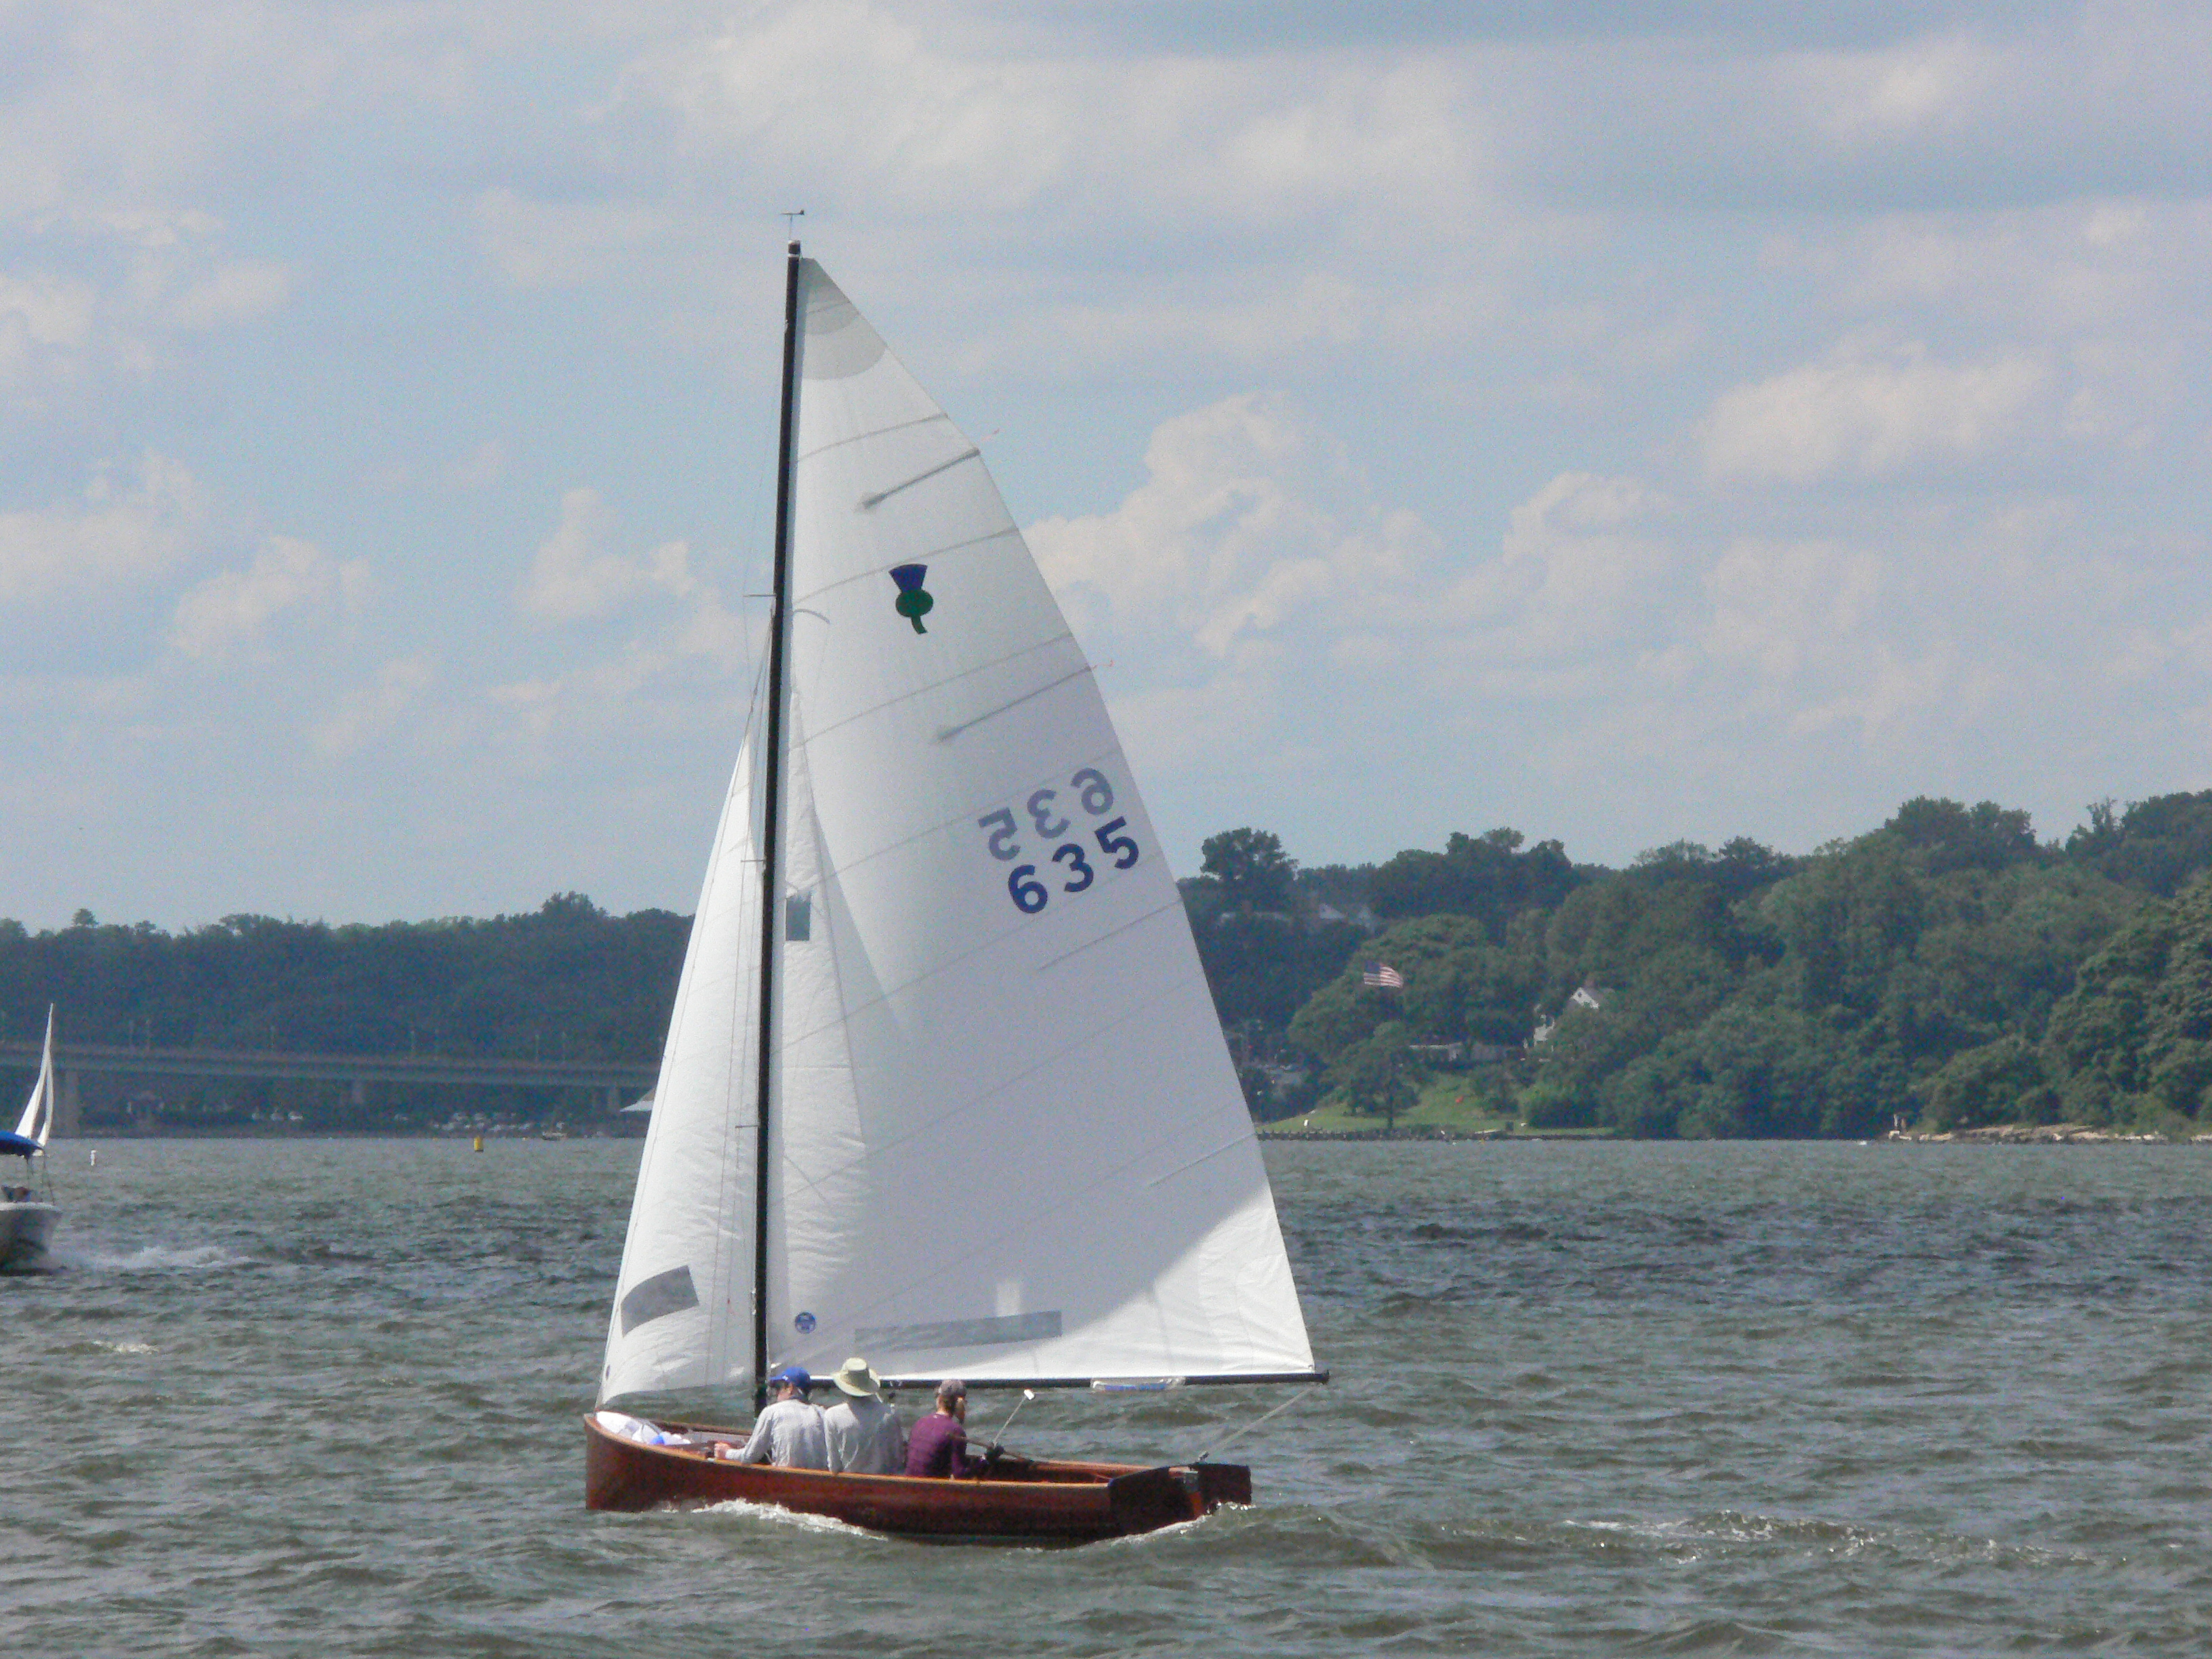 Wooden Sailboat sailing near the shcooner